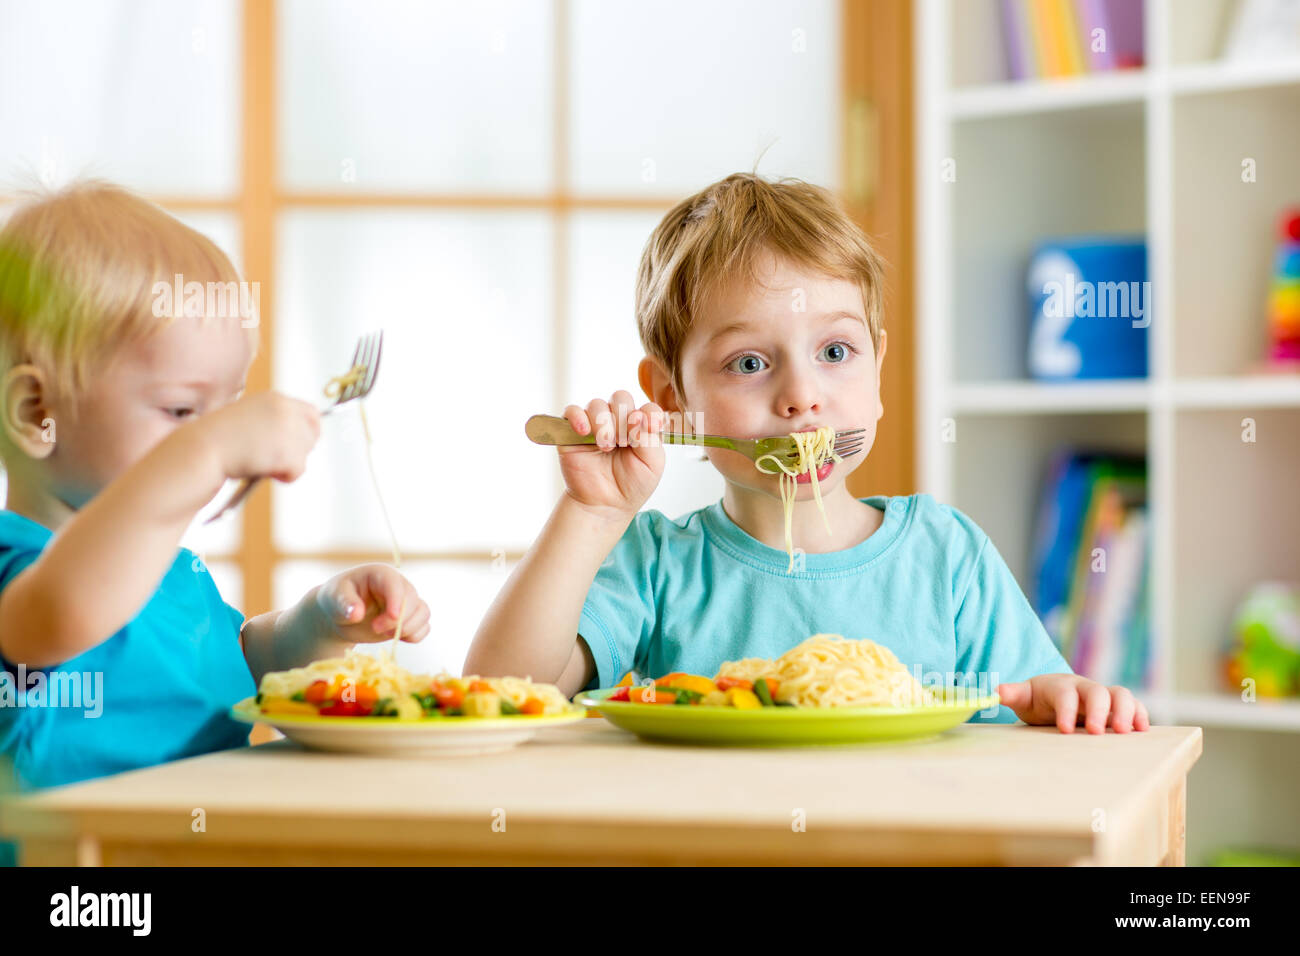 children eating in kindergarten Stock Photo